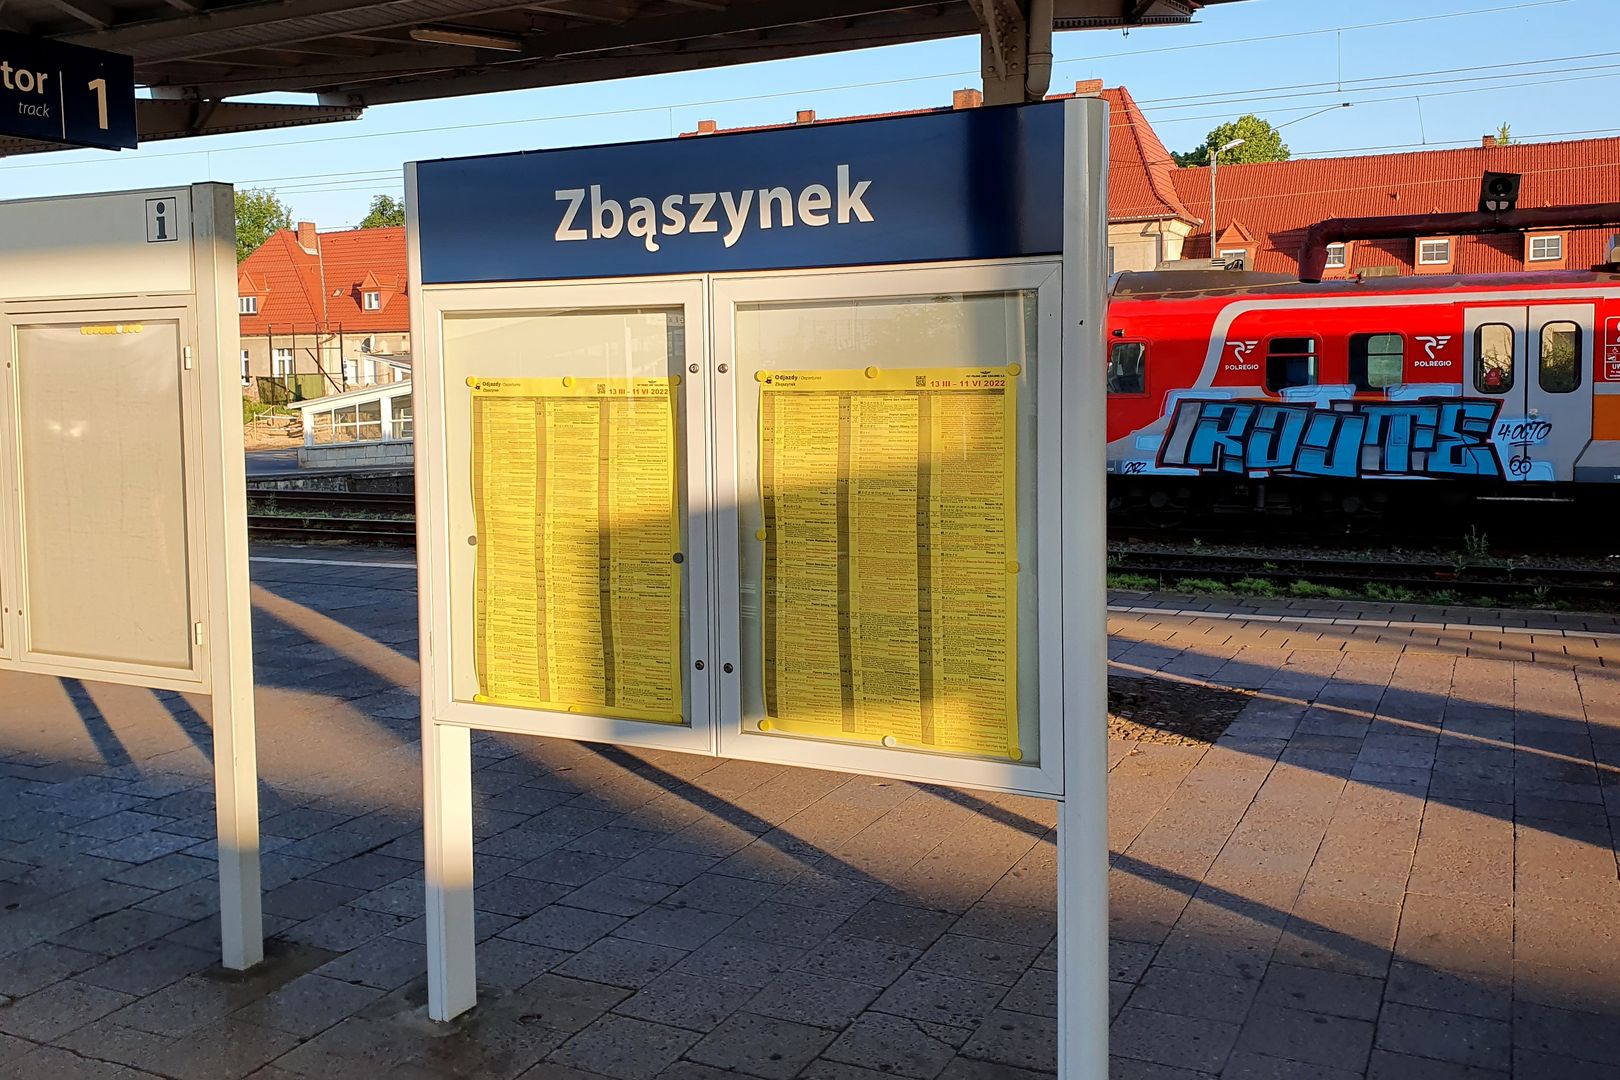 Cesta_vlakem_Zbąszynek - Varšava + MHD (002)